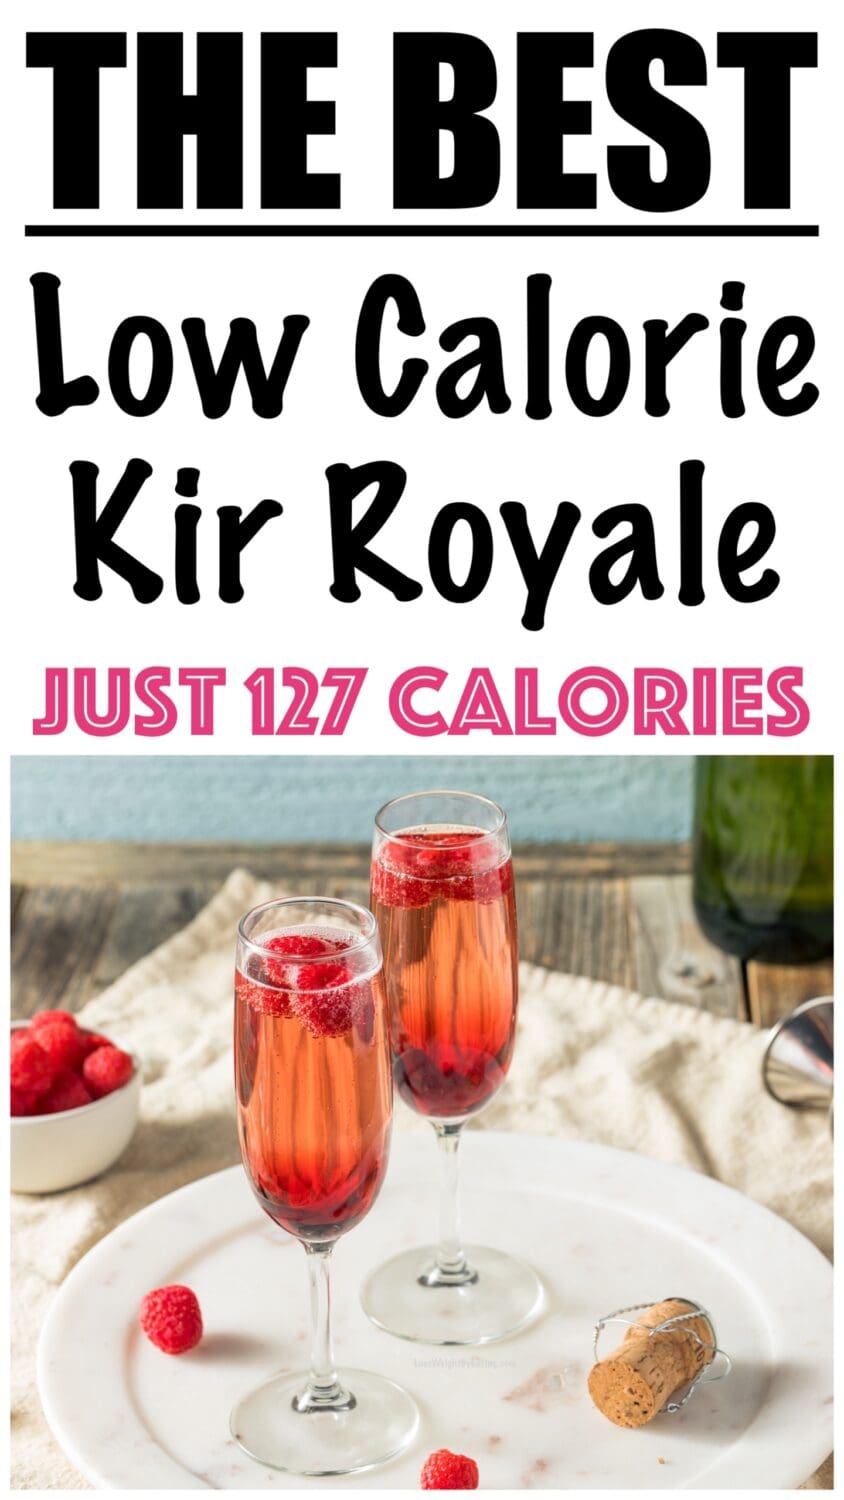 Low Calorie Kir Royale